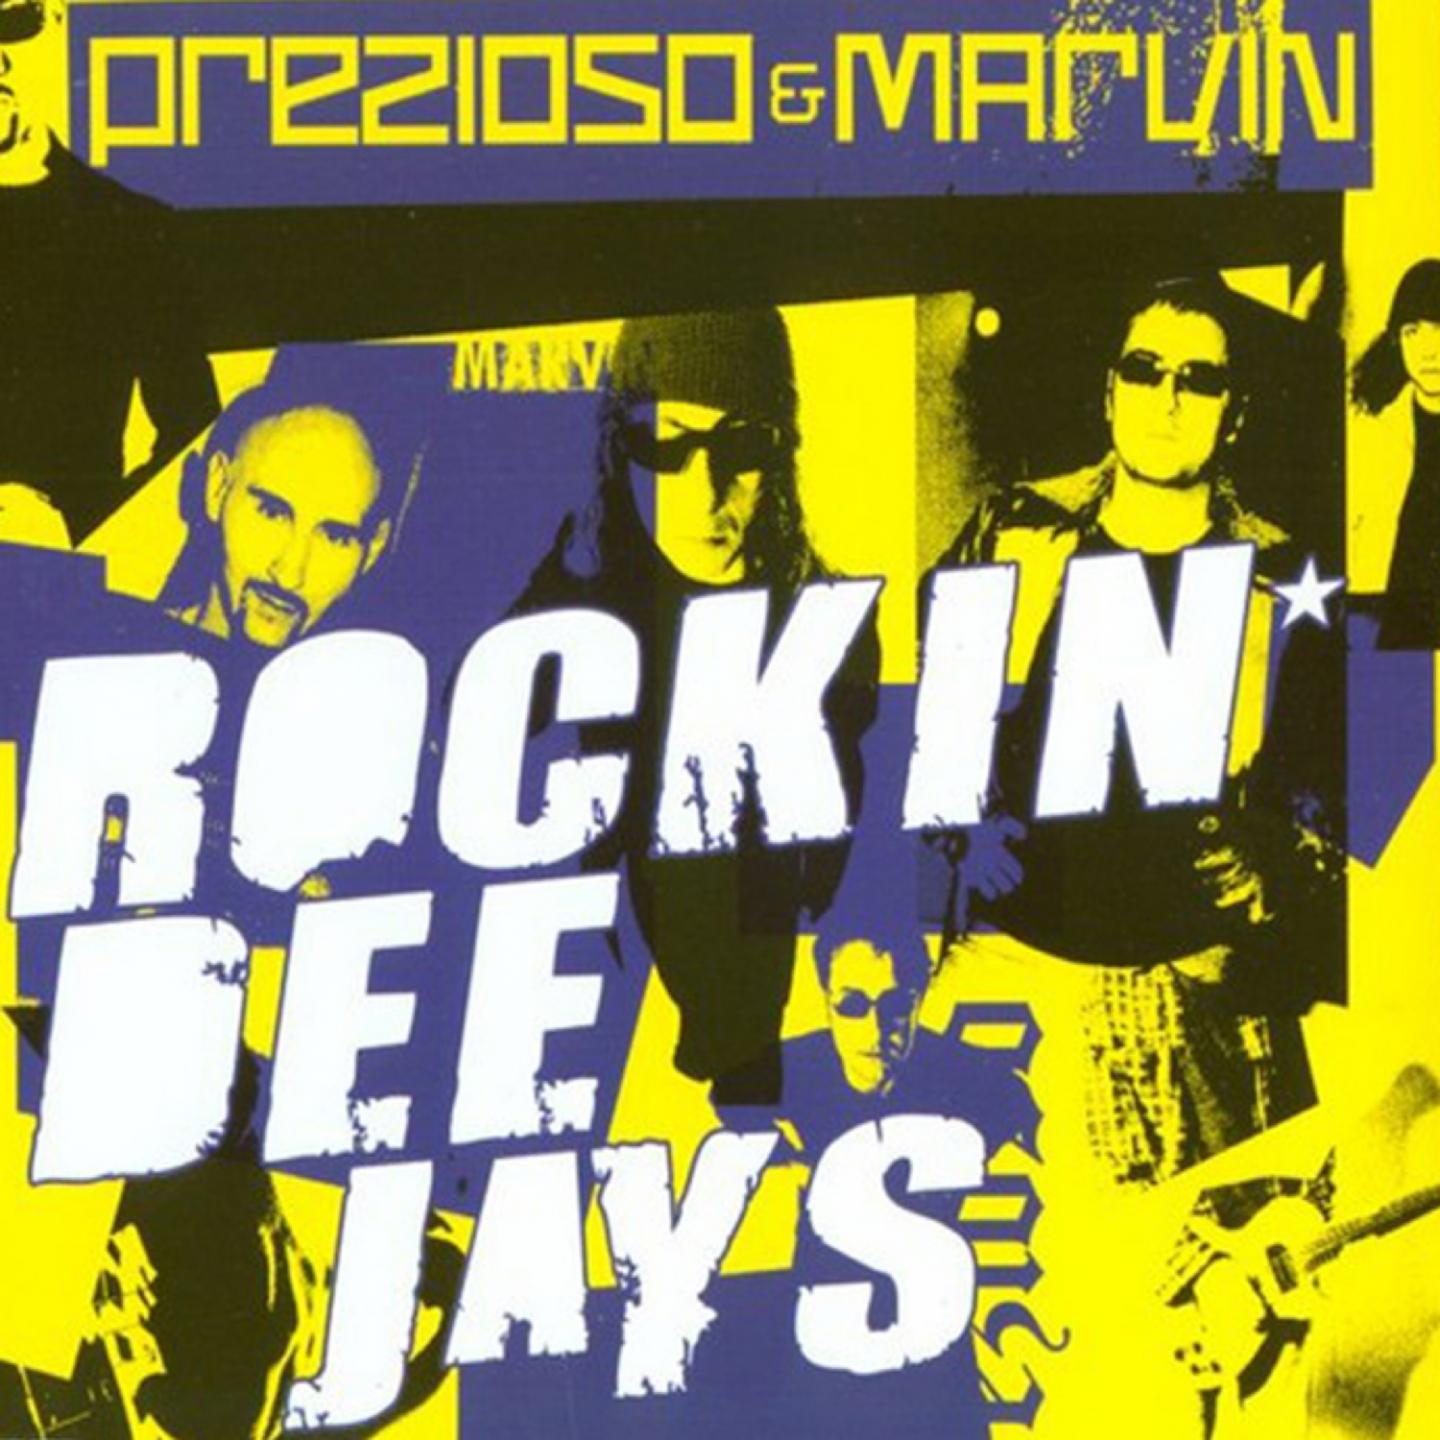 Rockin' Deejays专辑